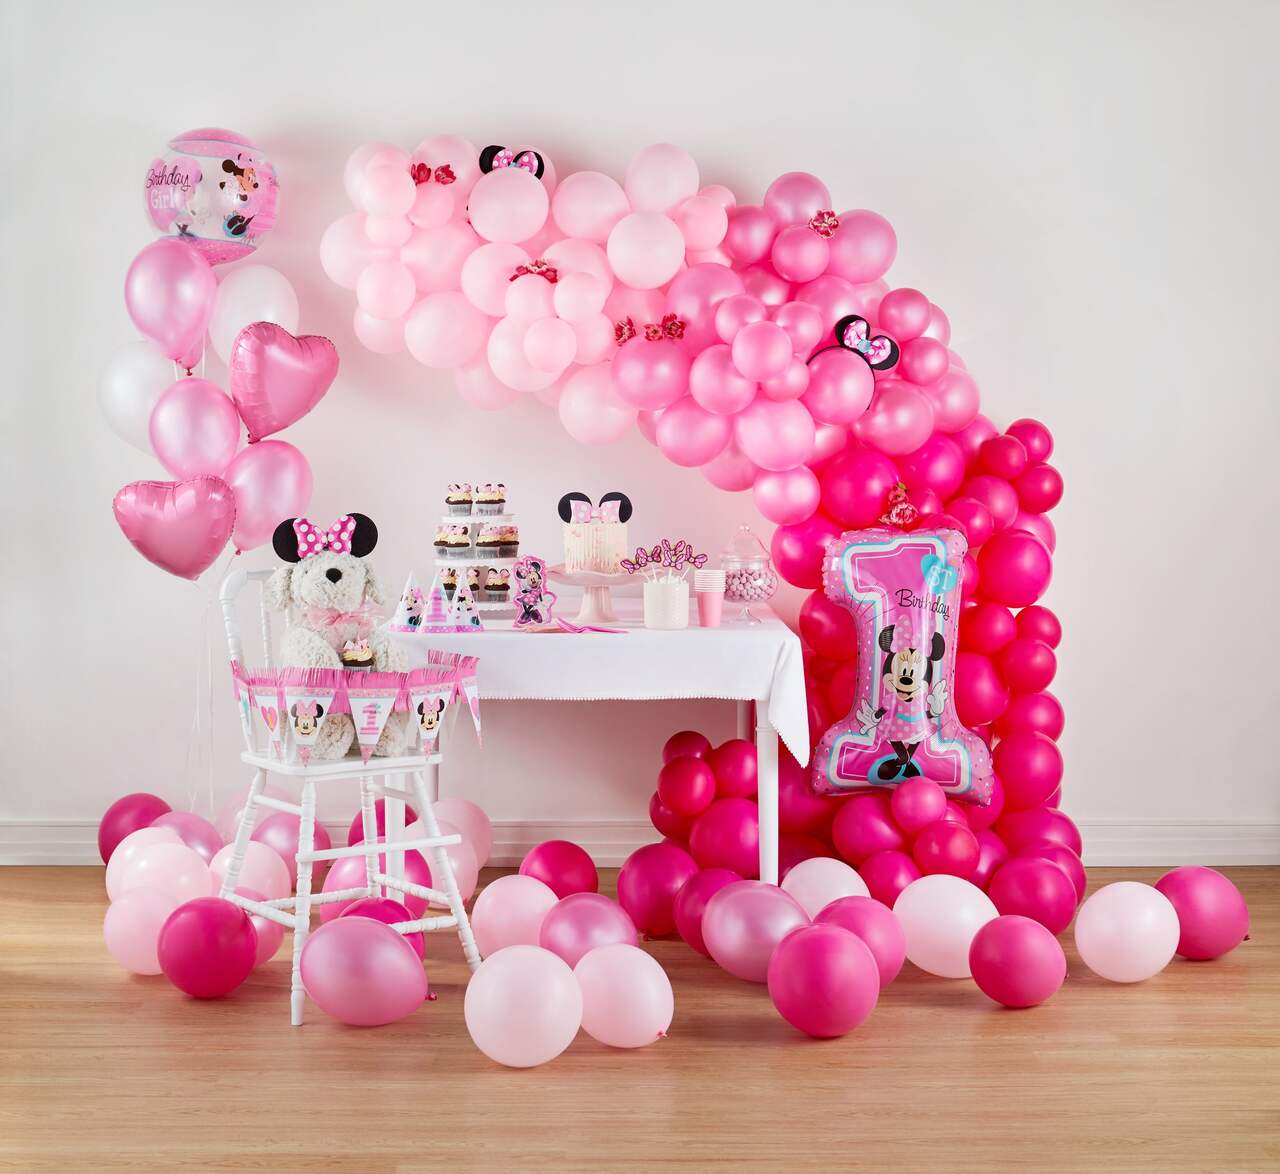 Bubble ballon à plat Minnie 1 an pour l'anniversaire de votre enfant -  Annikids